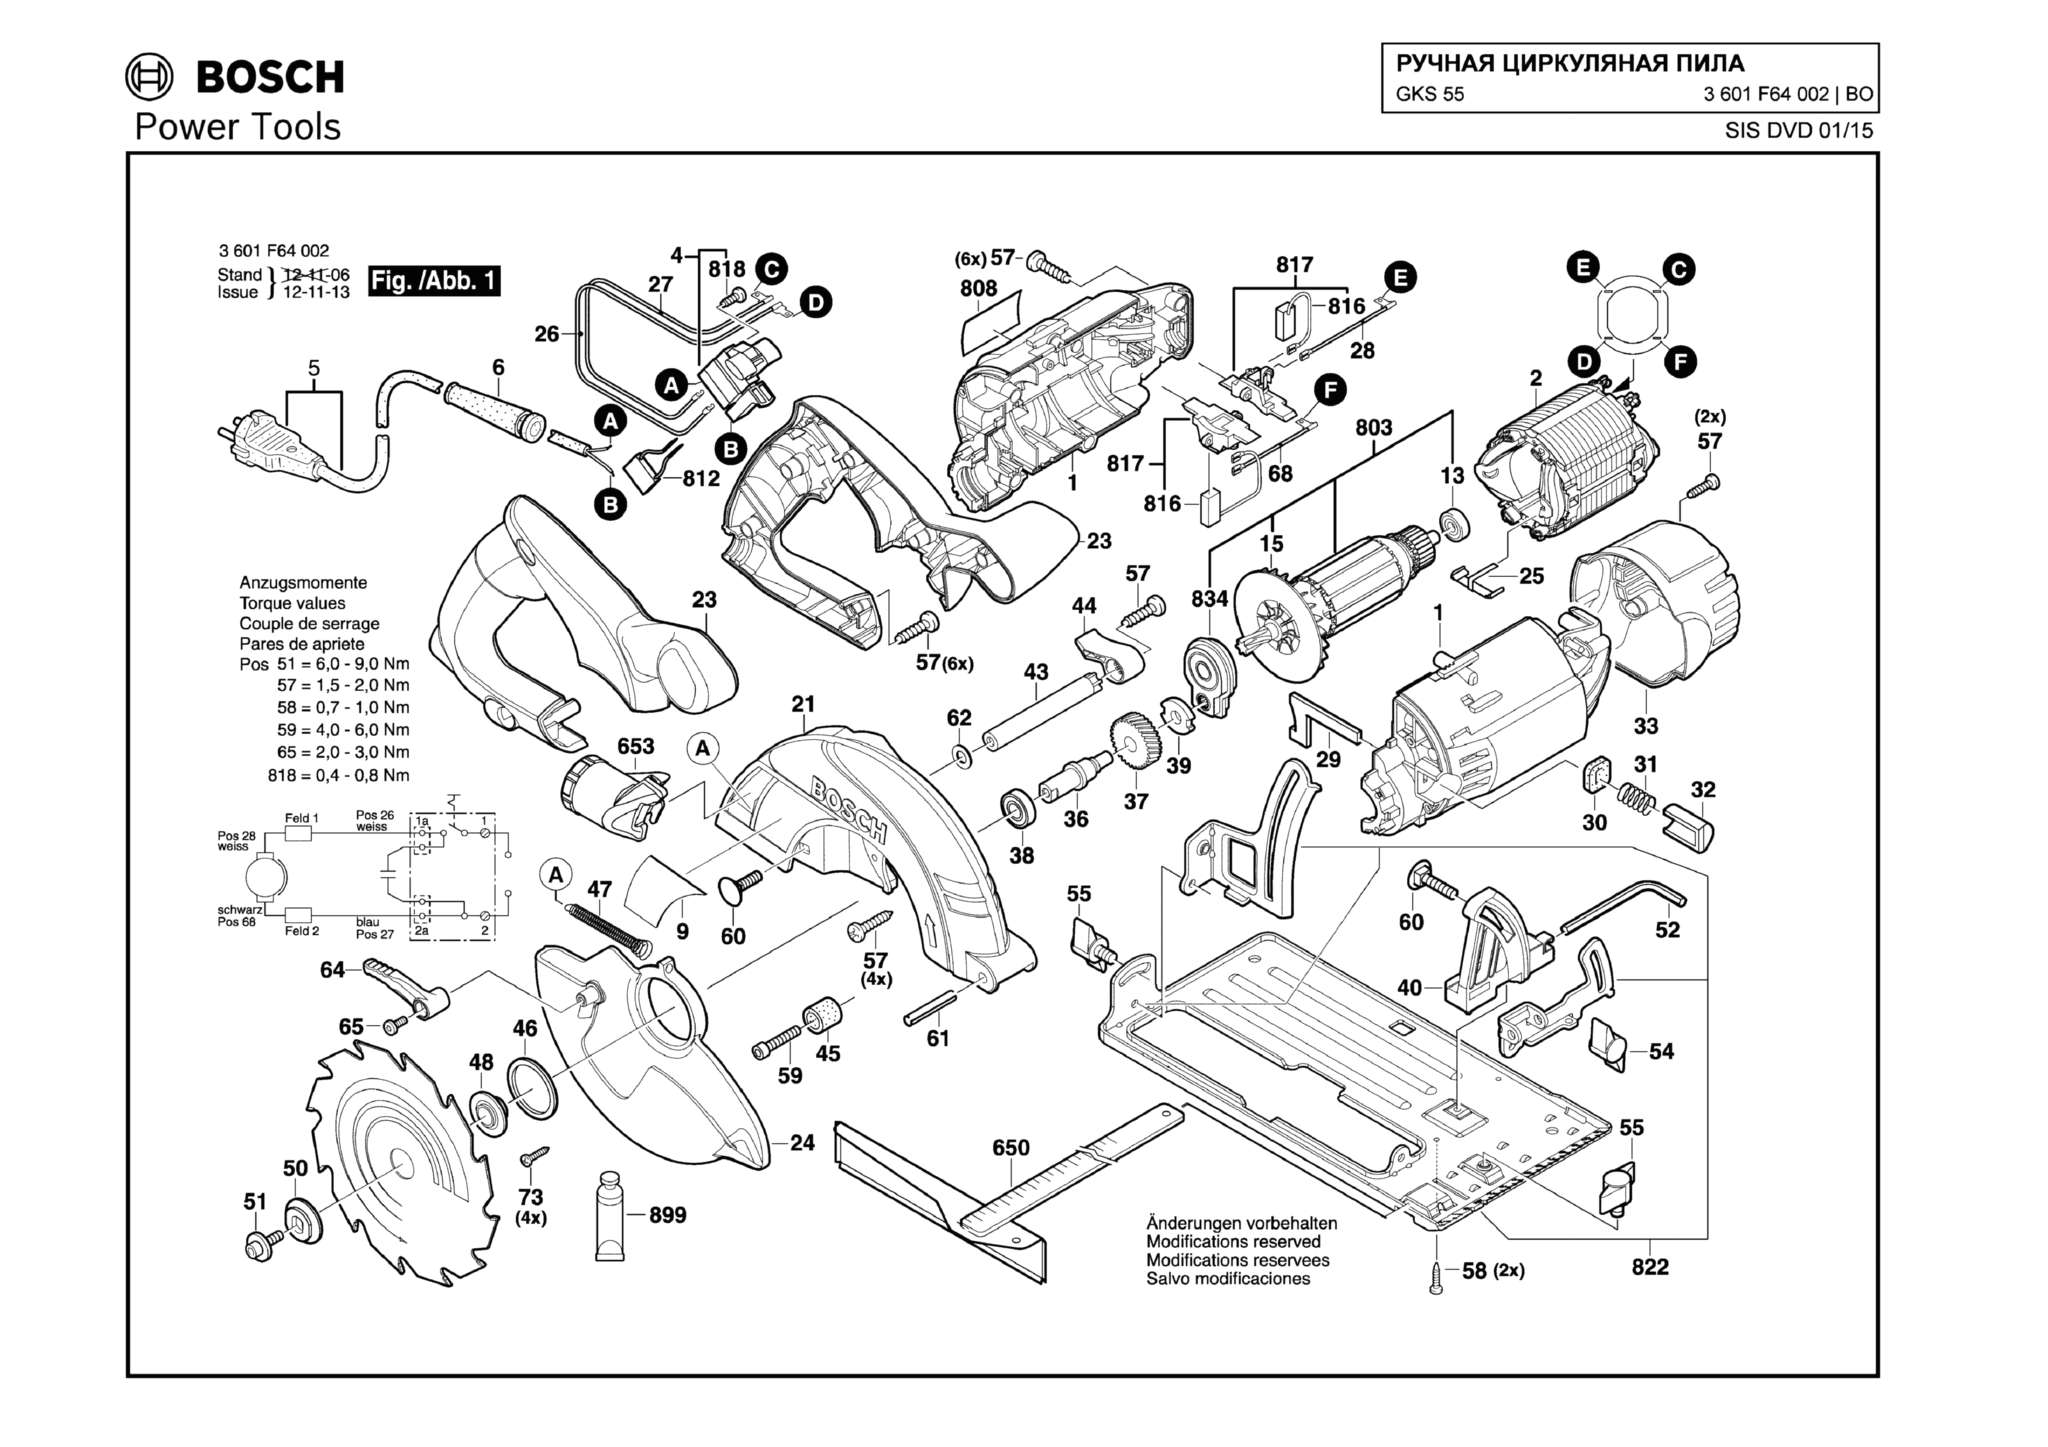 Запчасти, схема и деталировка Bosch GKS 55 (ТИП 3601F64002)